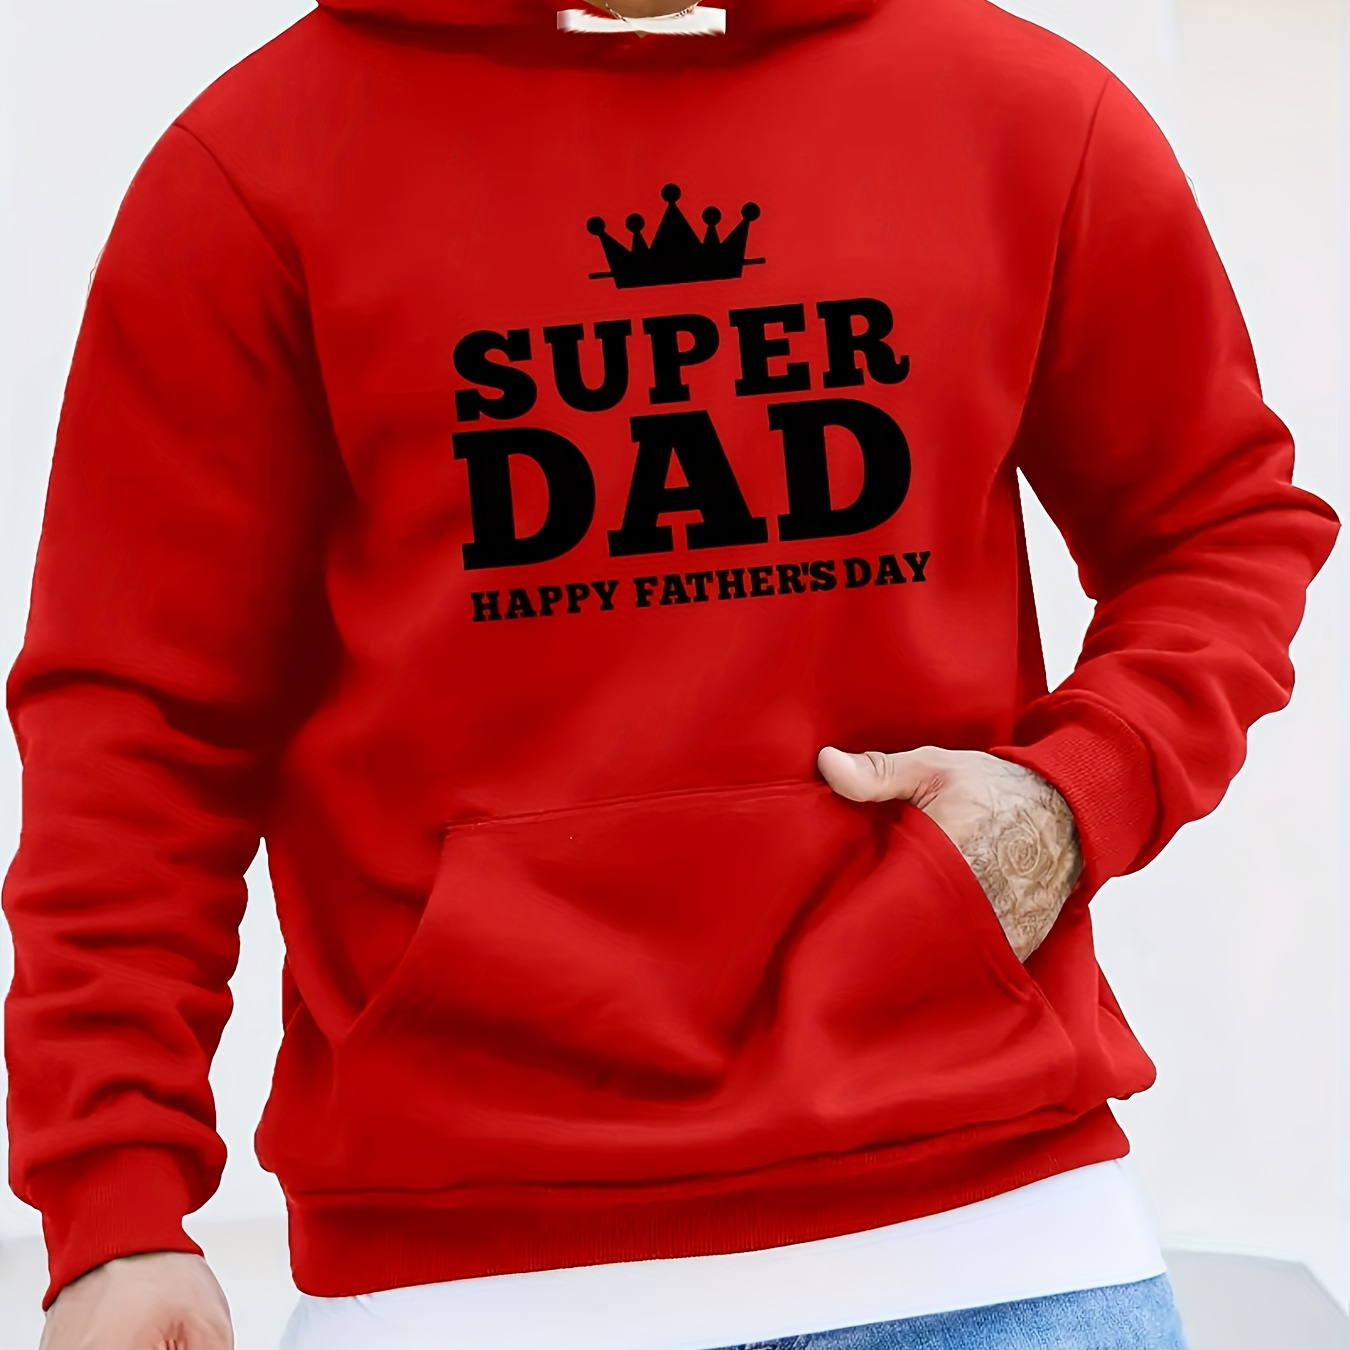 

super Dad" Print Hoodie With Kangaroo Pocket, Men's Casual Pullover Hooded Sweatshirt